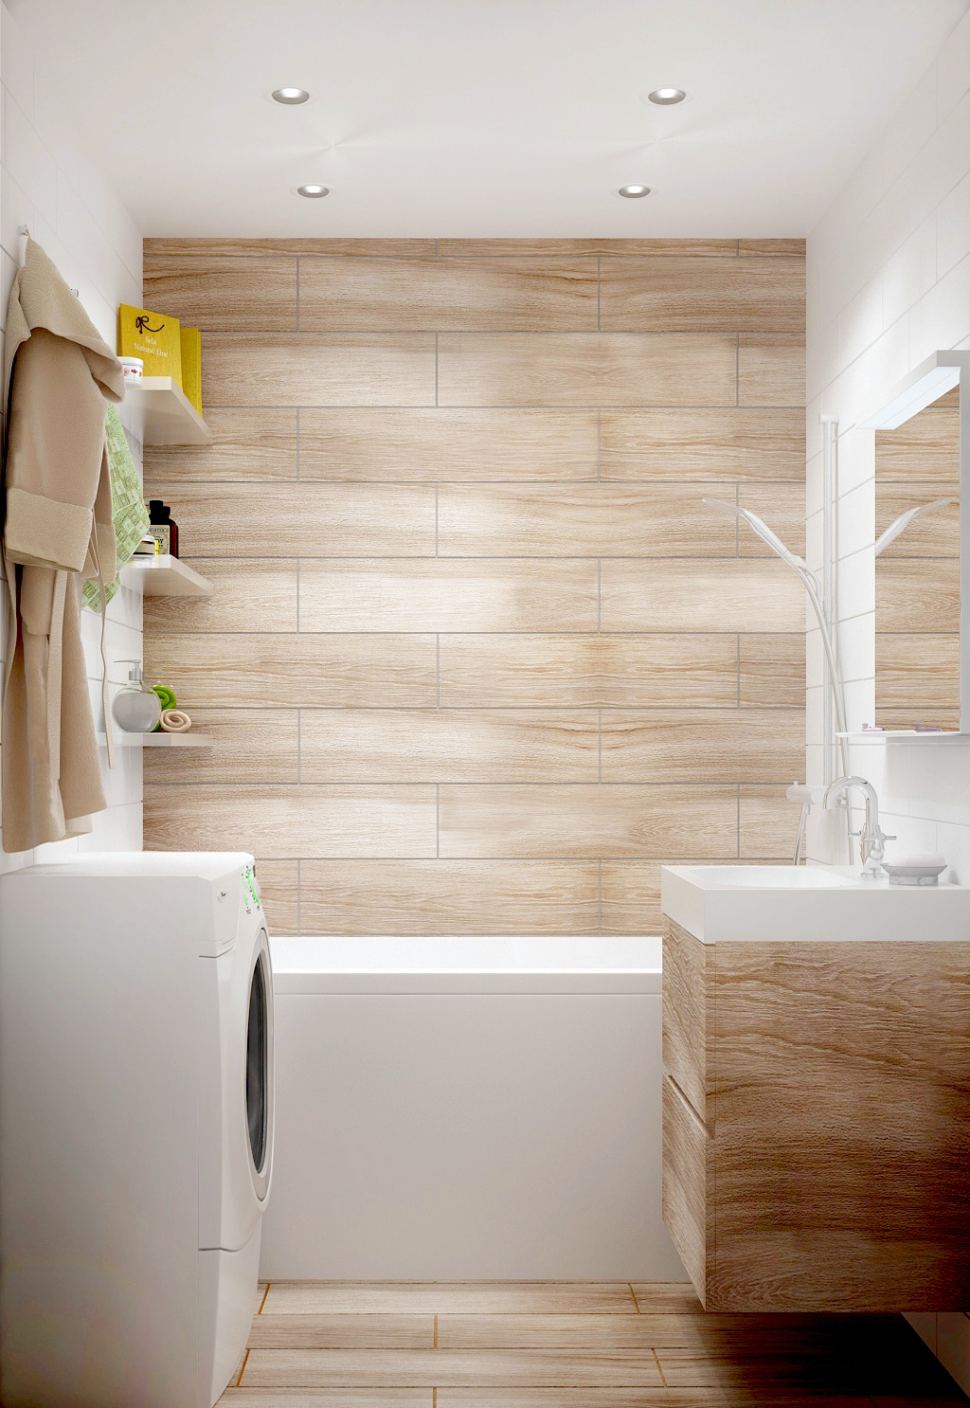 Интерьер ванной комнаты 3 кв.м в древесных тонах, керамическая плитка, ванна, стиральная машинка 